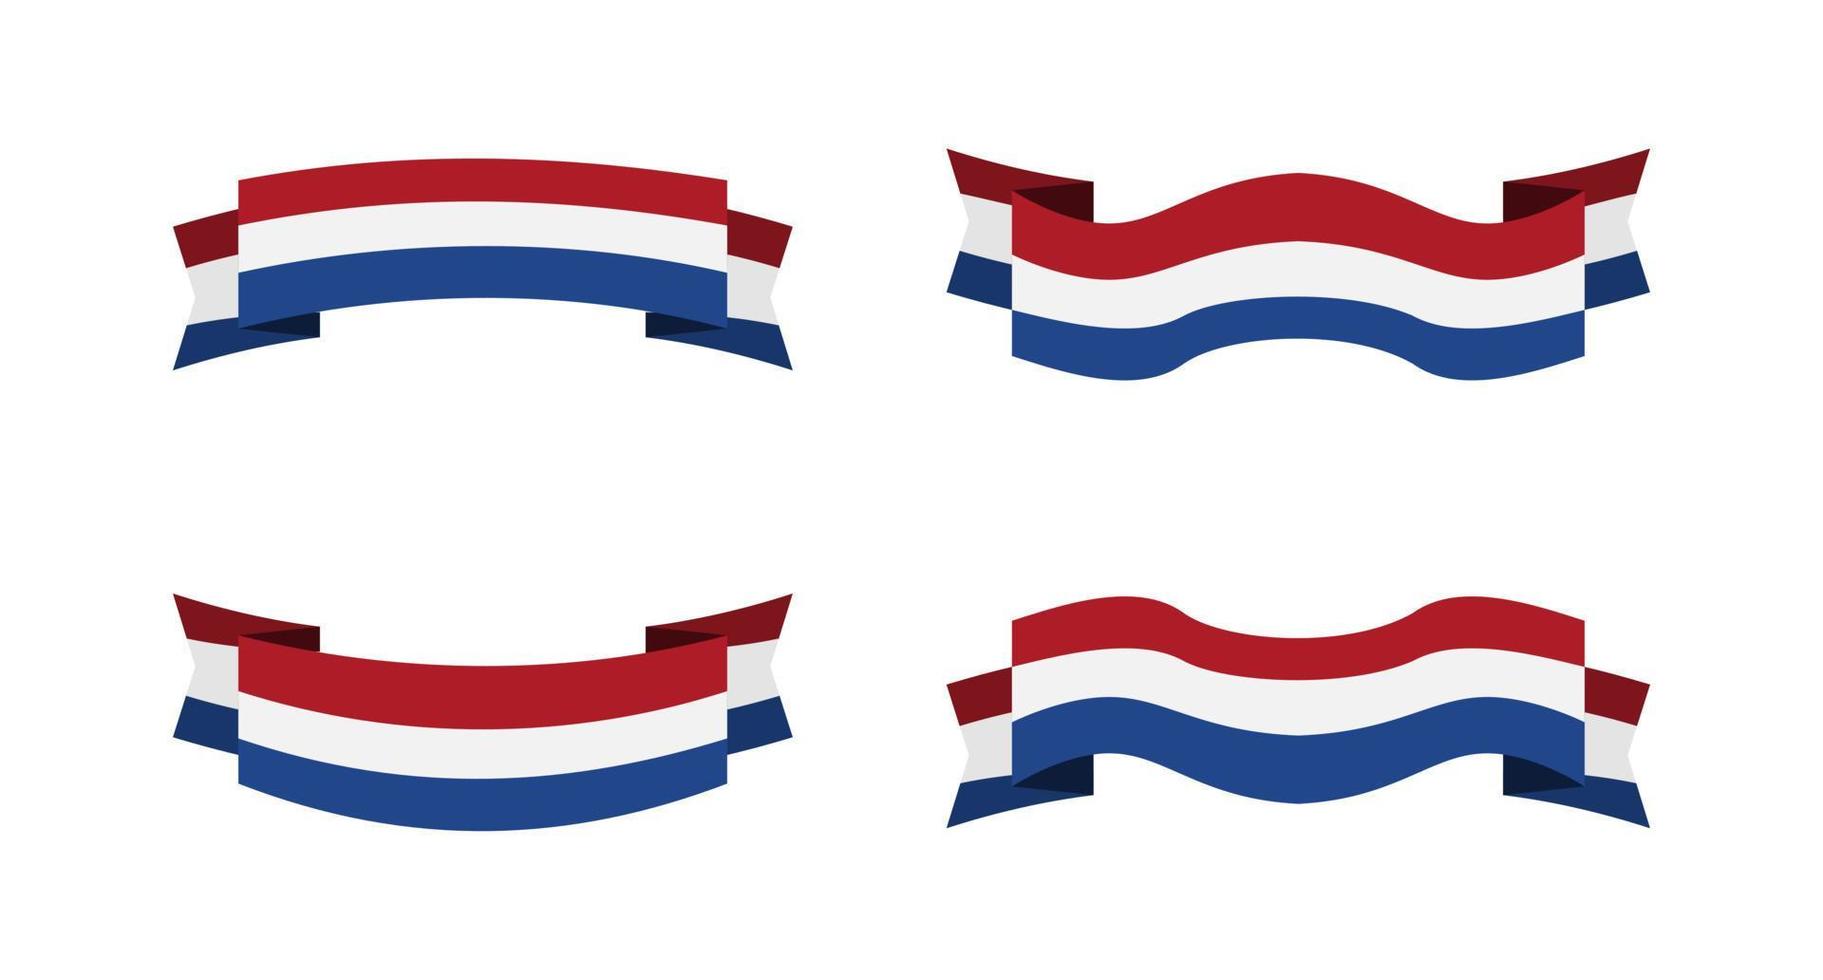 illustratie van een vlag van nederland met een lint-stijl. nederlandse vlag vector set.